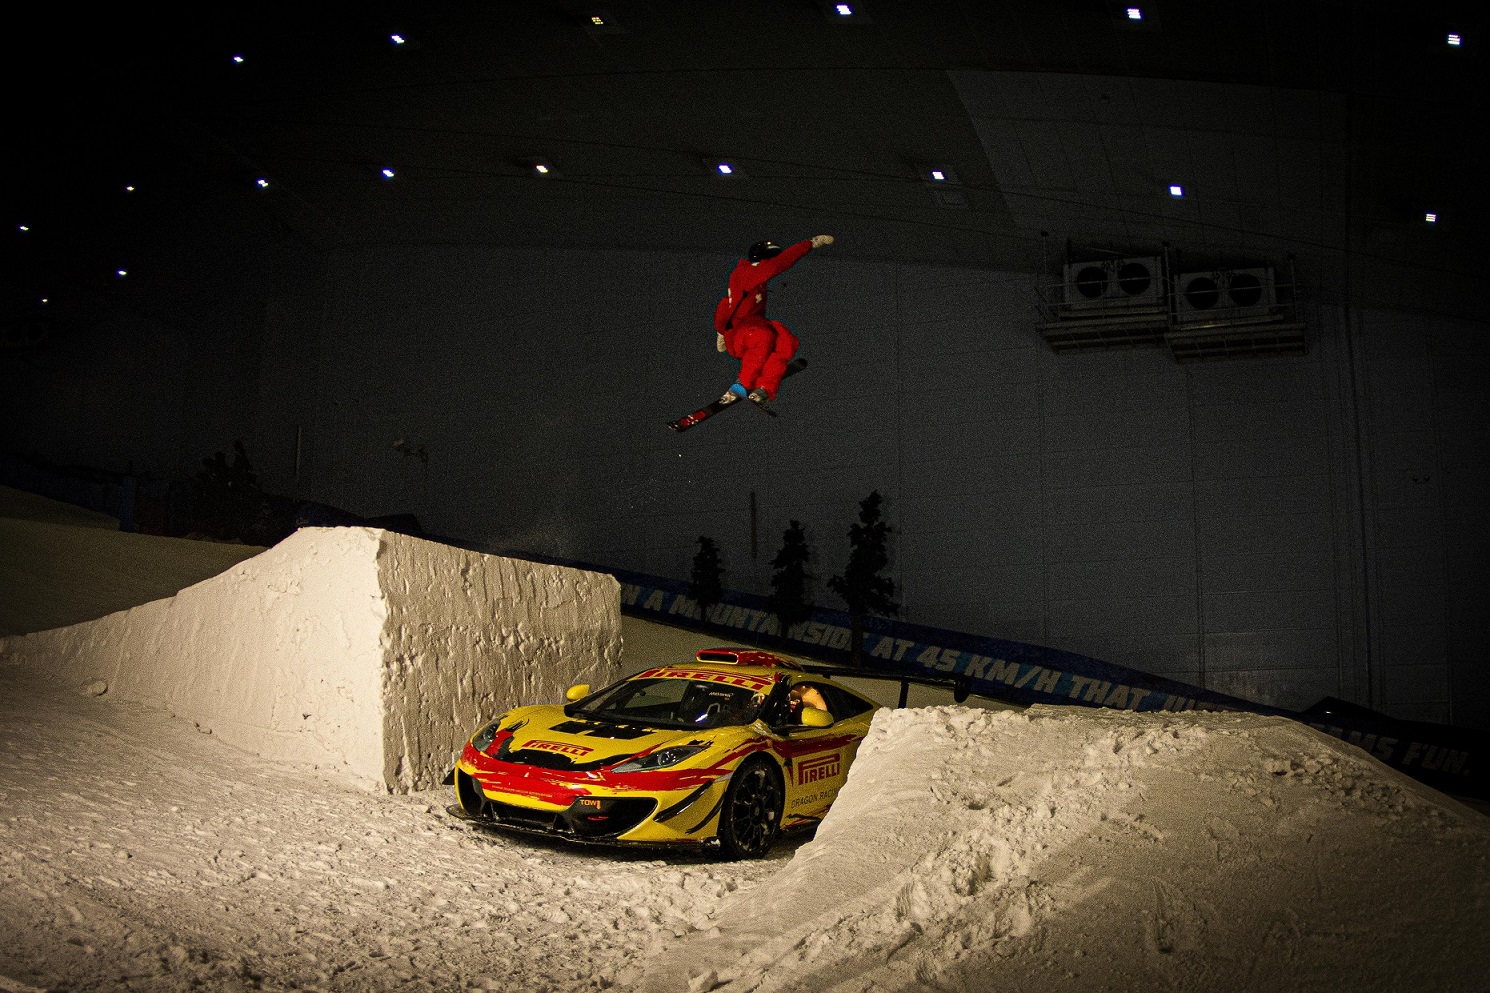 Incredible Stunt at Ski Dubai